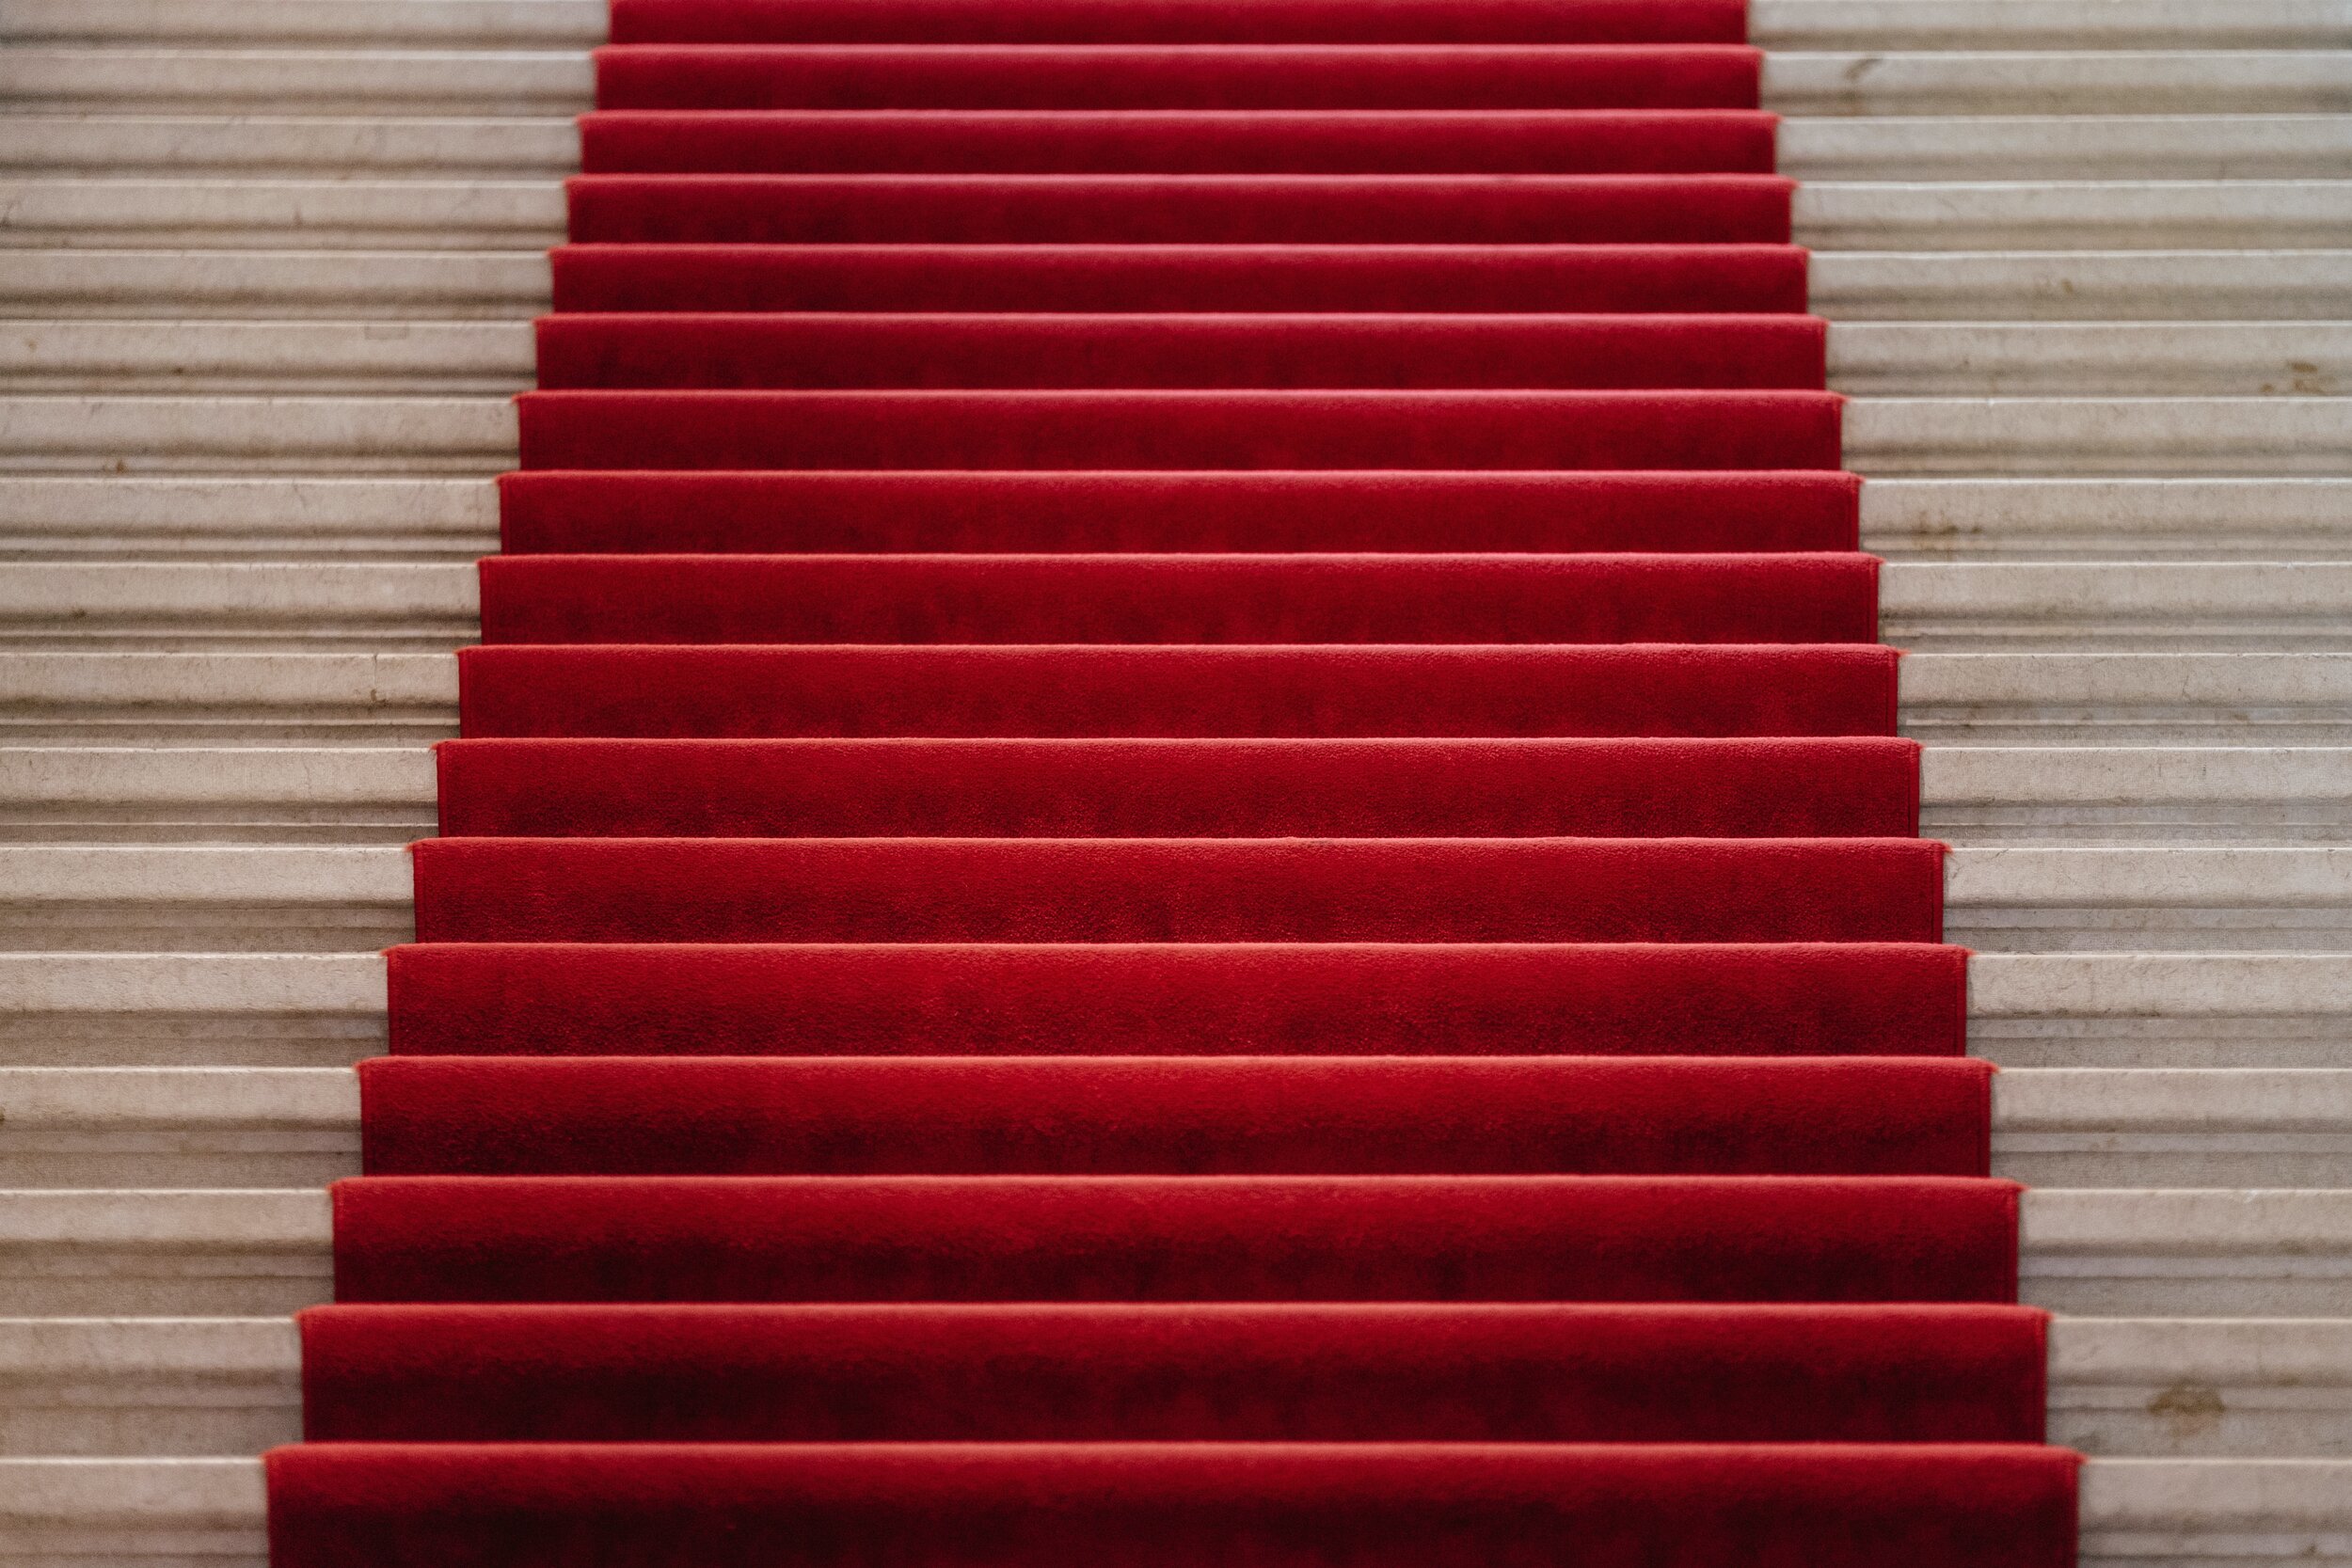 2 Red Carpet Photo by Samuel Zeller on Unsplash.jpg